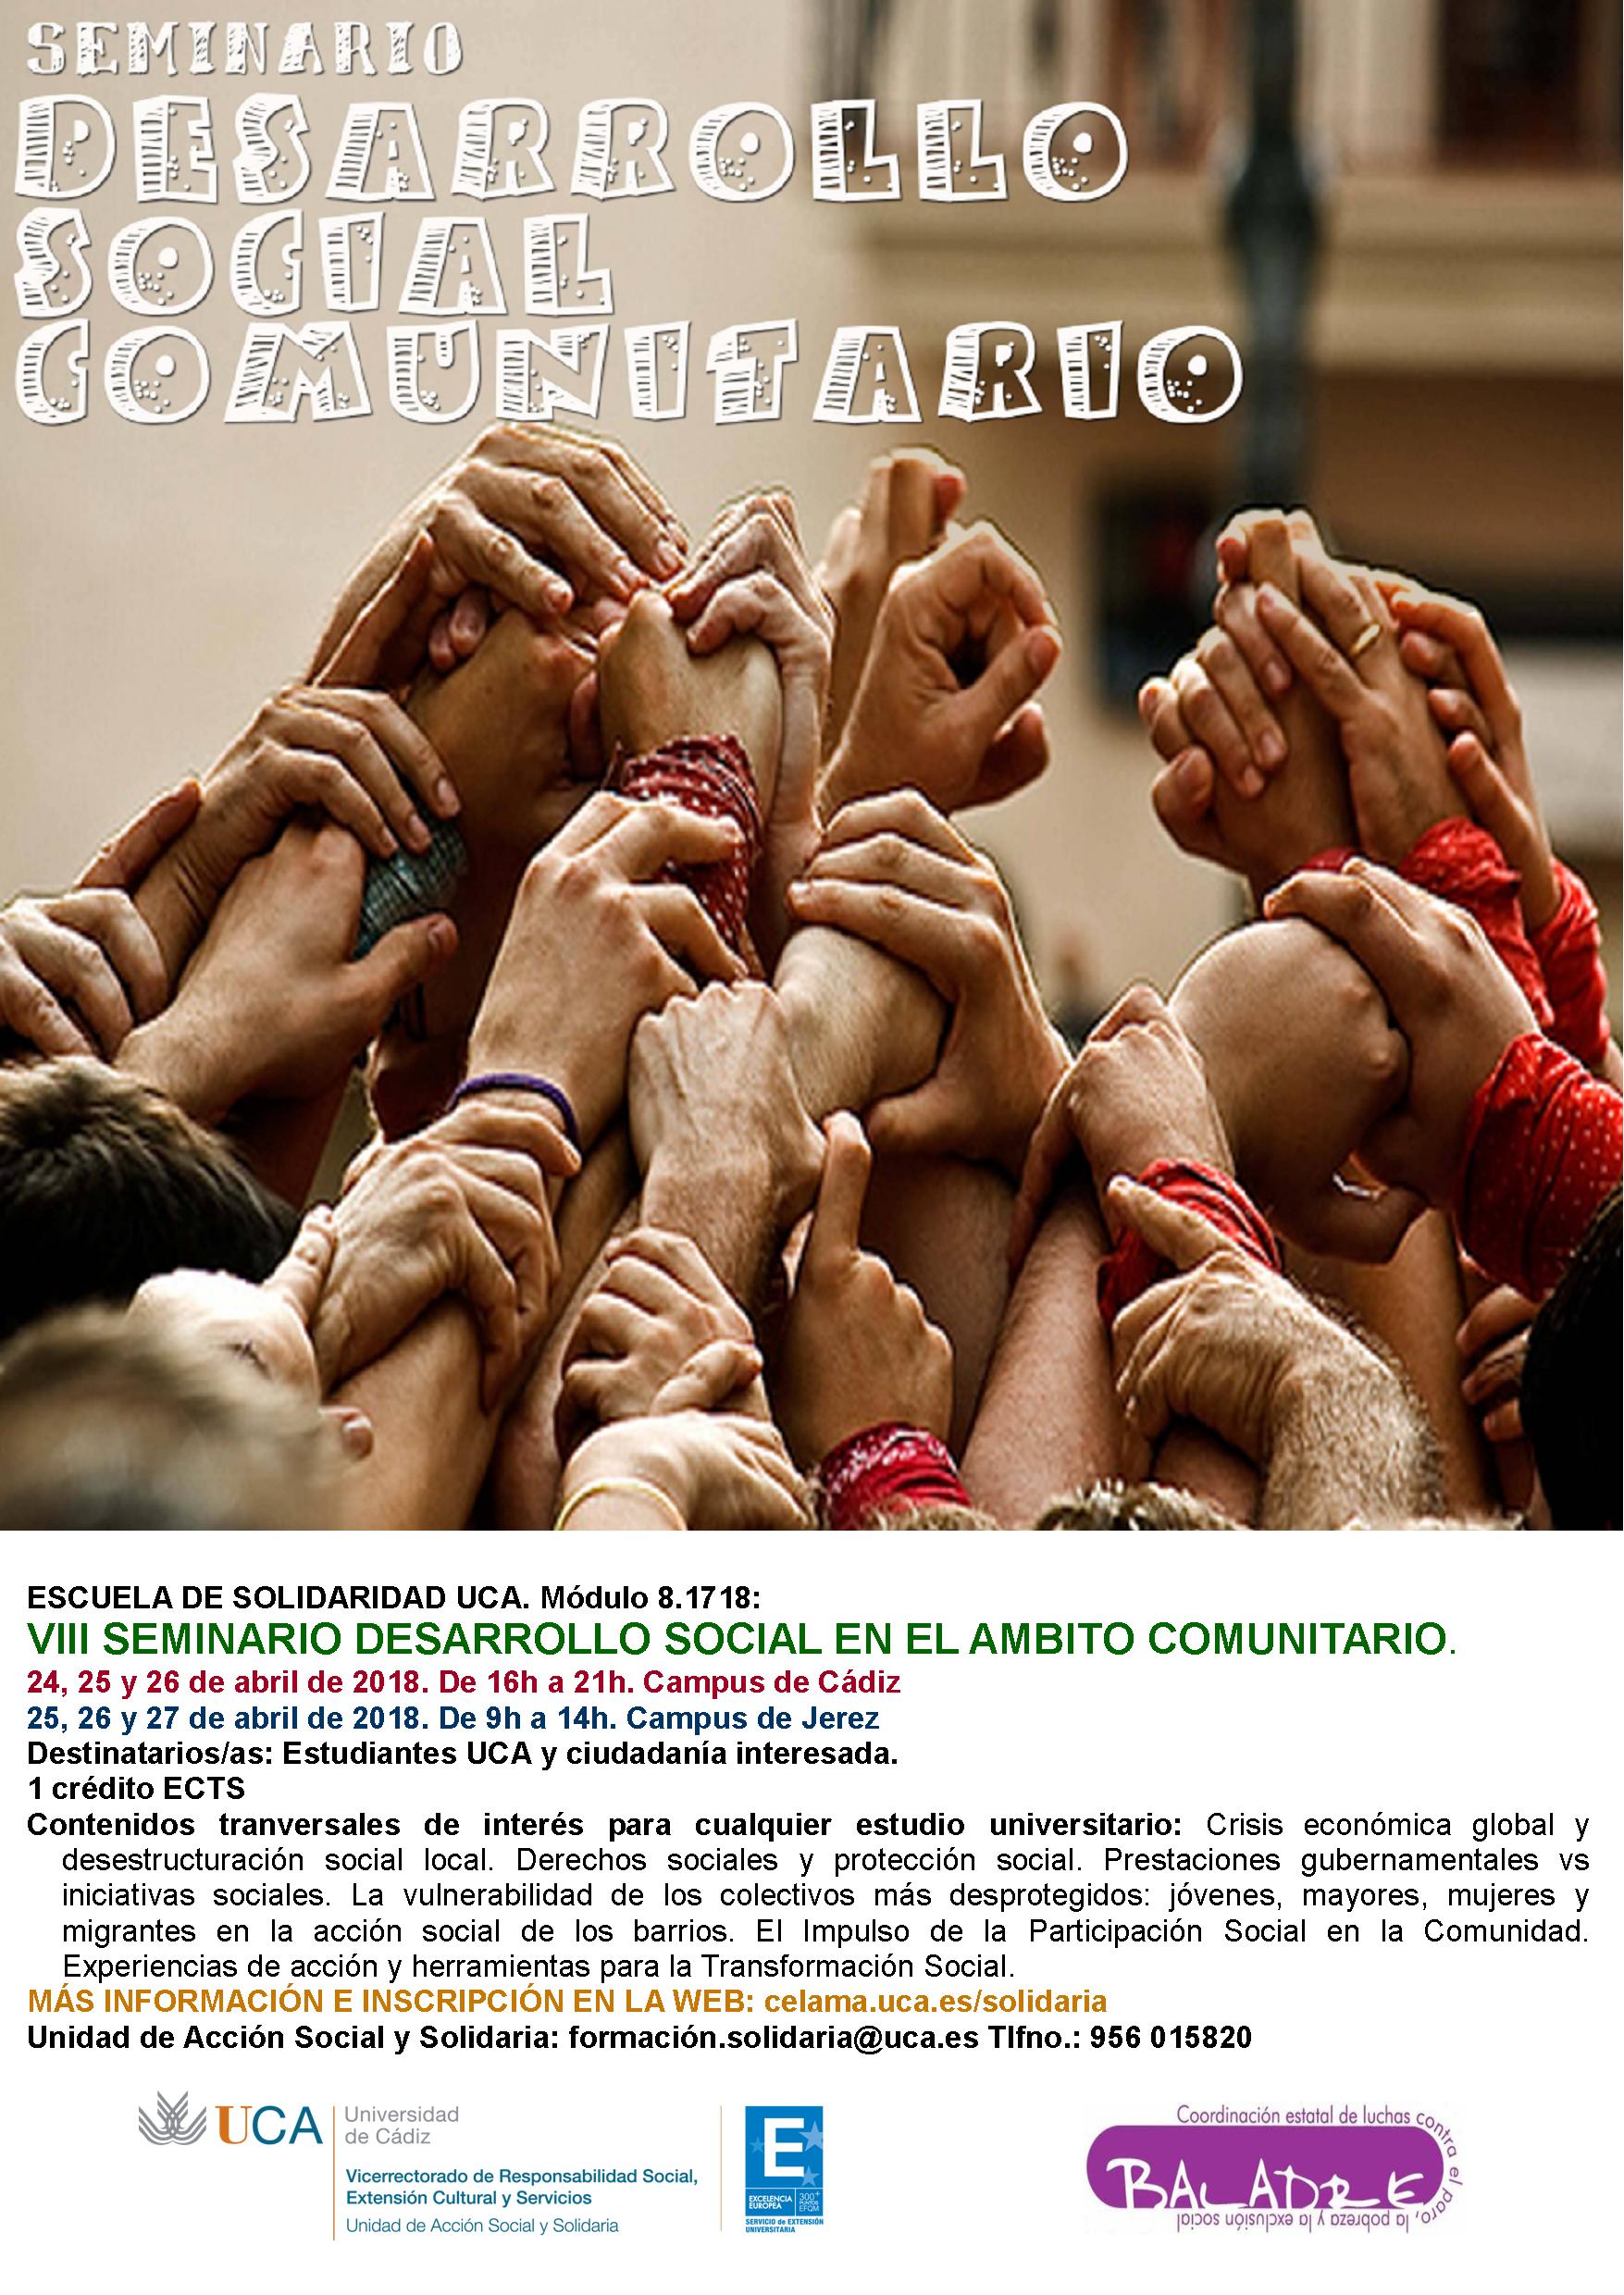 Campus Cádiz y Jerez. VIII Seminario “Desarrollo Social en el Ámbito Comunitario”. Escuela de Solidaridad UCA.